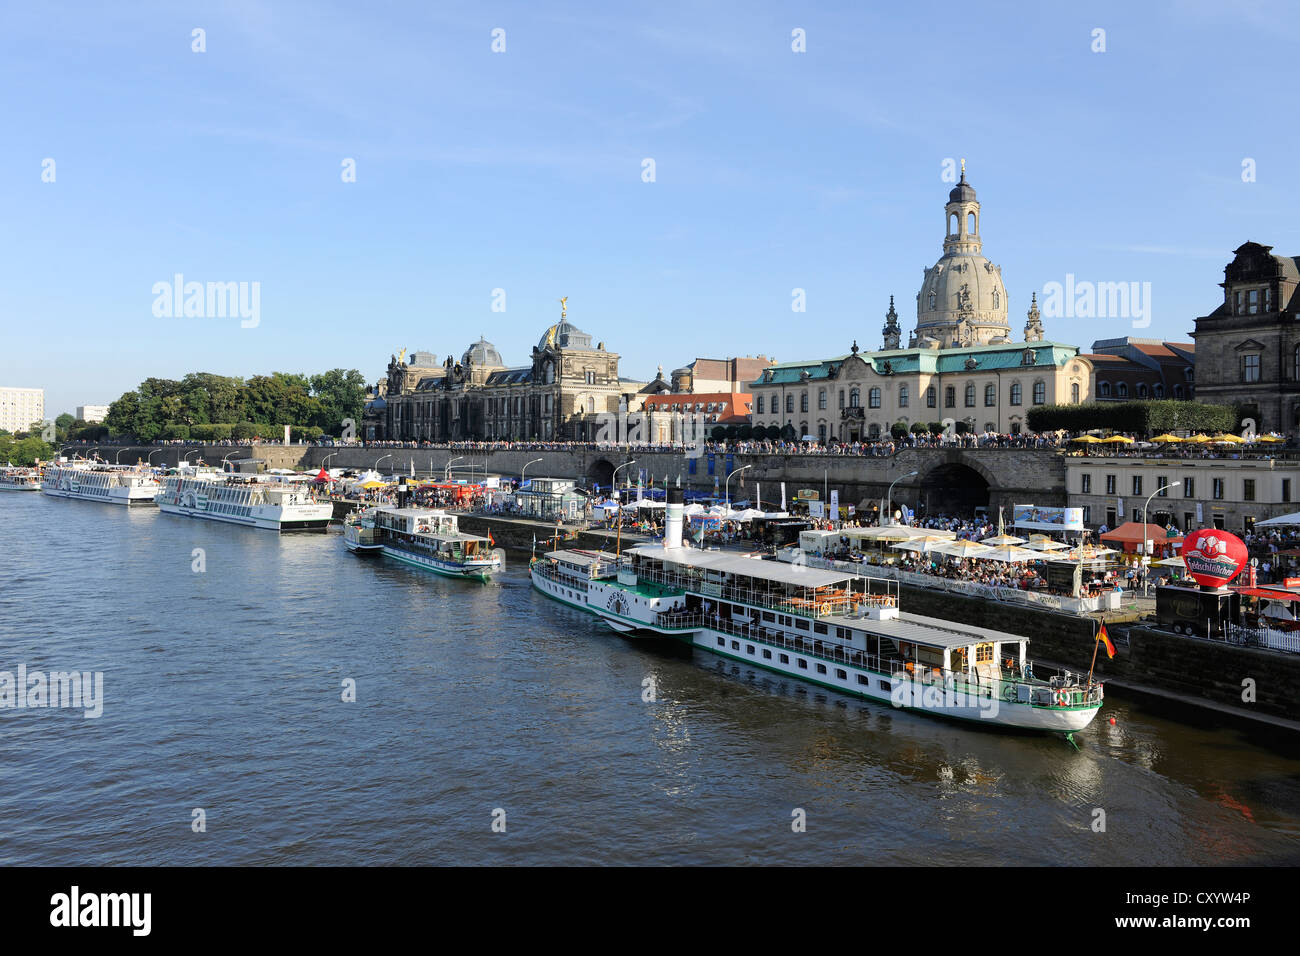 La città di Dresda Festival, Terrassenufer waterfront e Bruehl's Terrace, Fiume Elba e barche, chiesa Frauenkirche sul retro Foto Stock